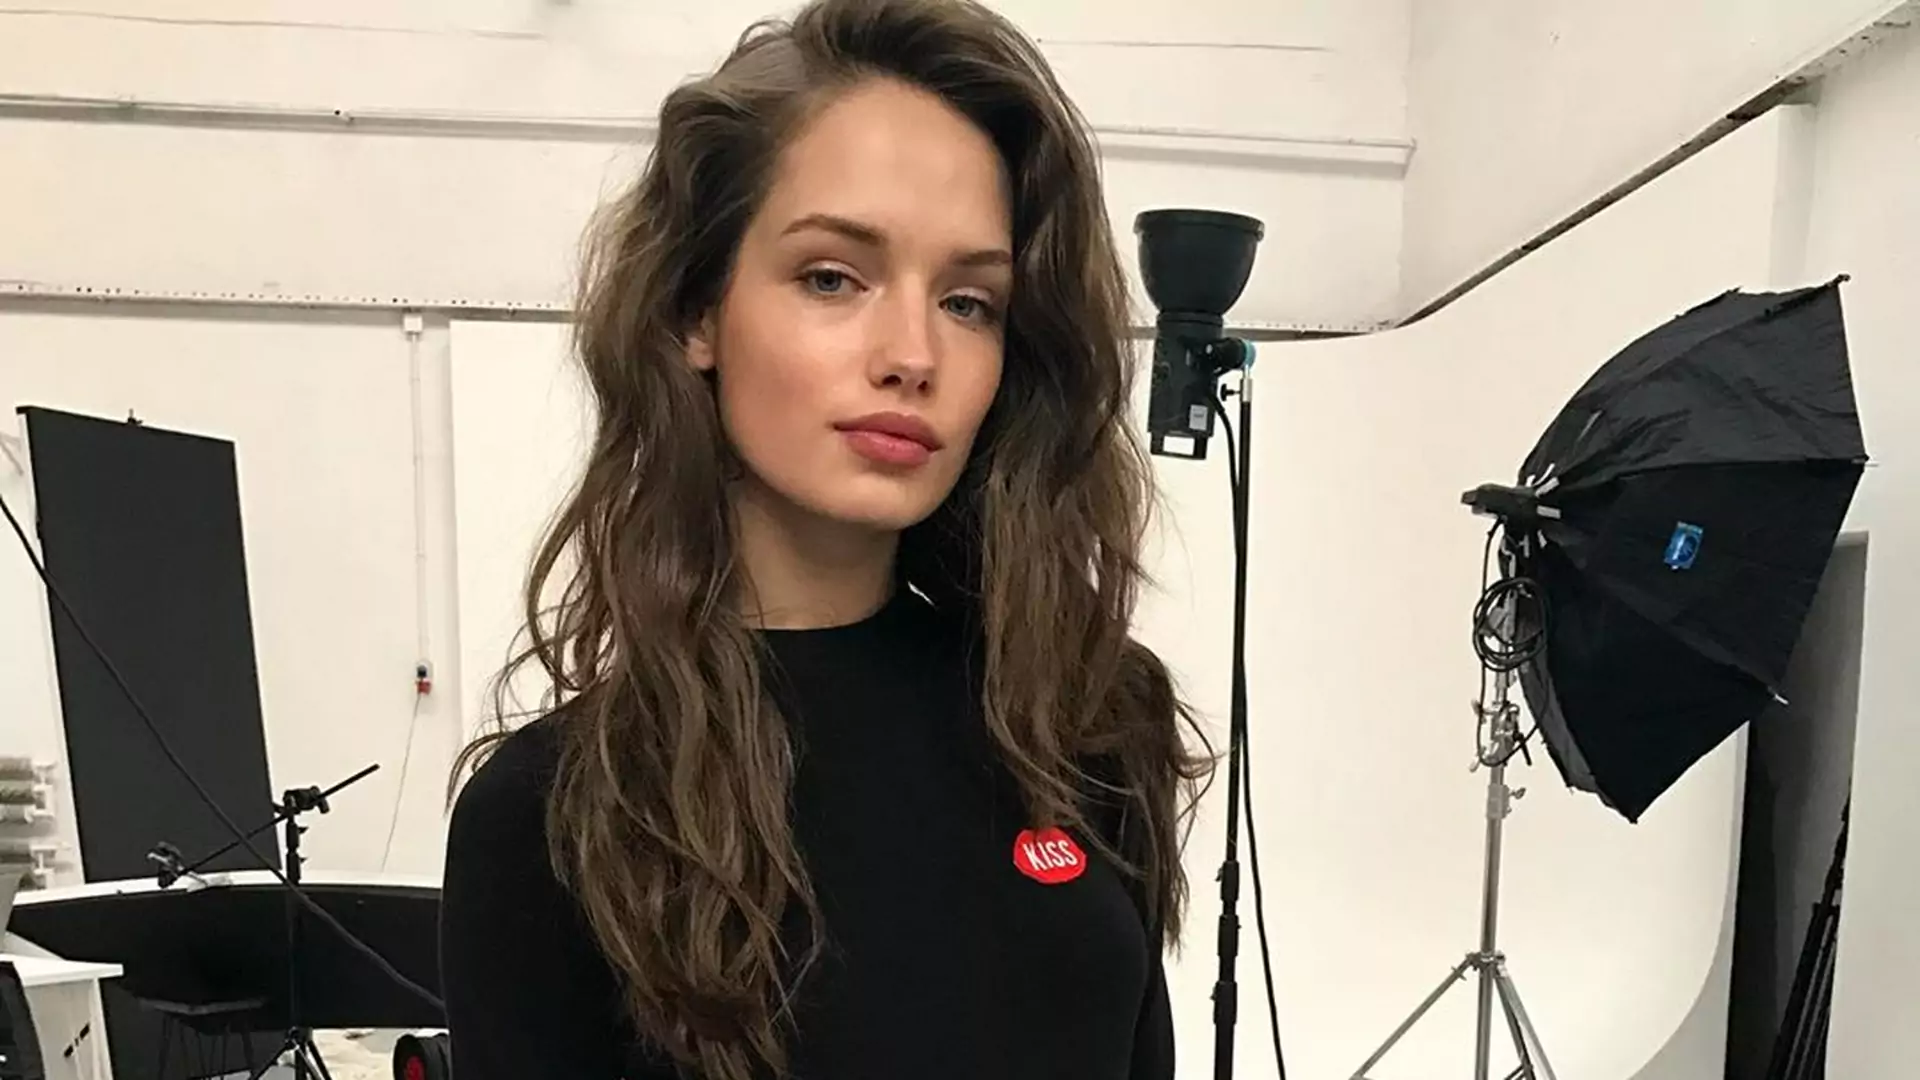 Polskie modelki, piękne jak Gigi Hadid - warto zacząć śledzić je na Instagramie